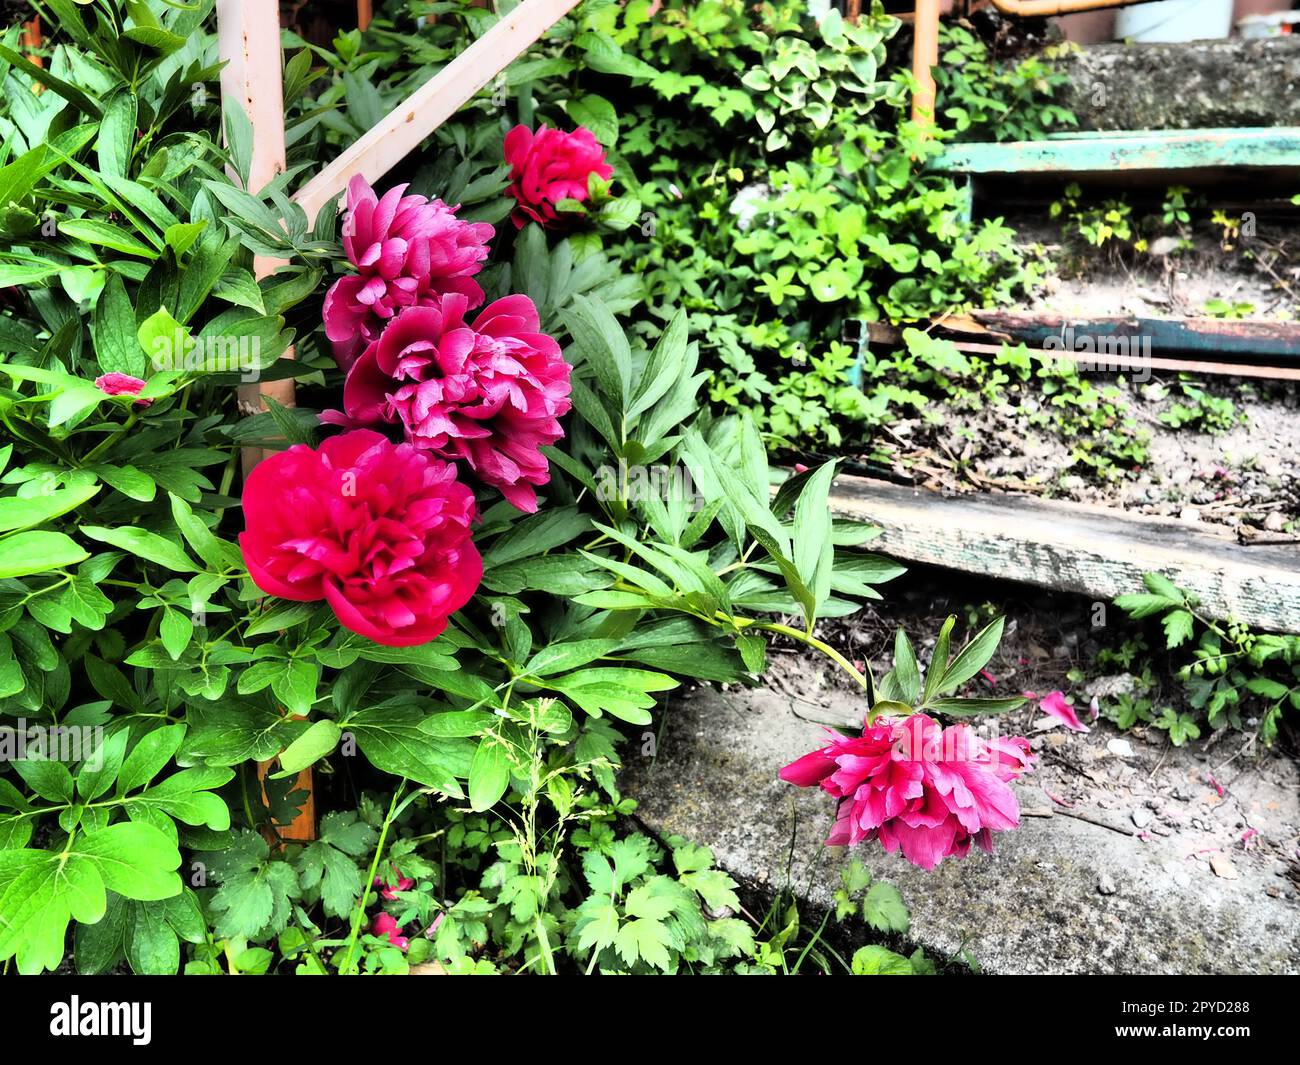 Rot-rosa Pfingstrosen. Wunderschöne große Pfingstrosen vor grünem Laub und Gras. Floristik, Blumenzucht und Gartenarbeit als Hobby. Holztreppe im Hintergrund Stockfoto